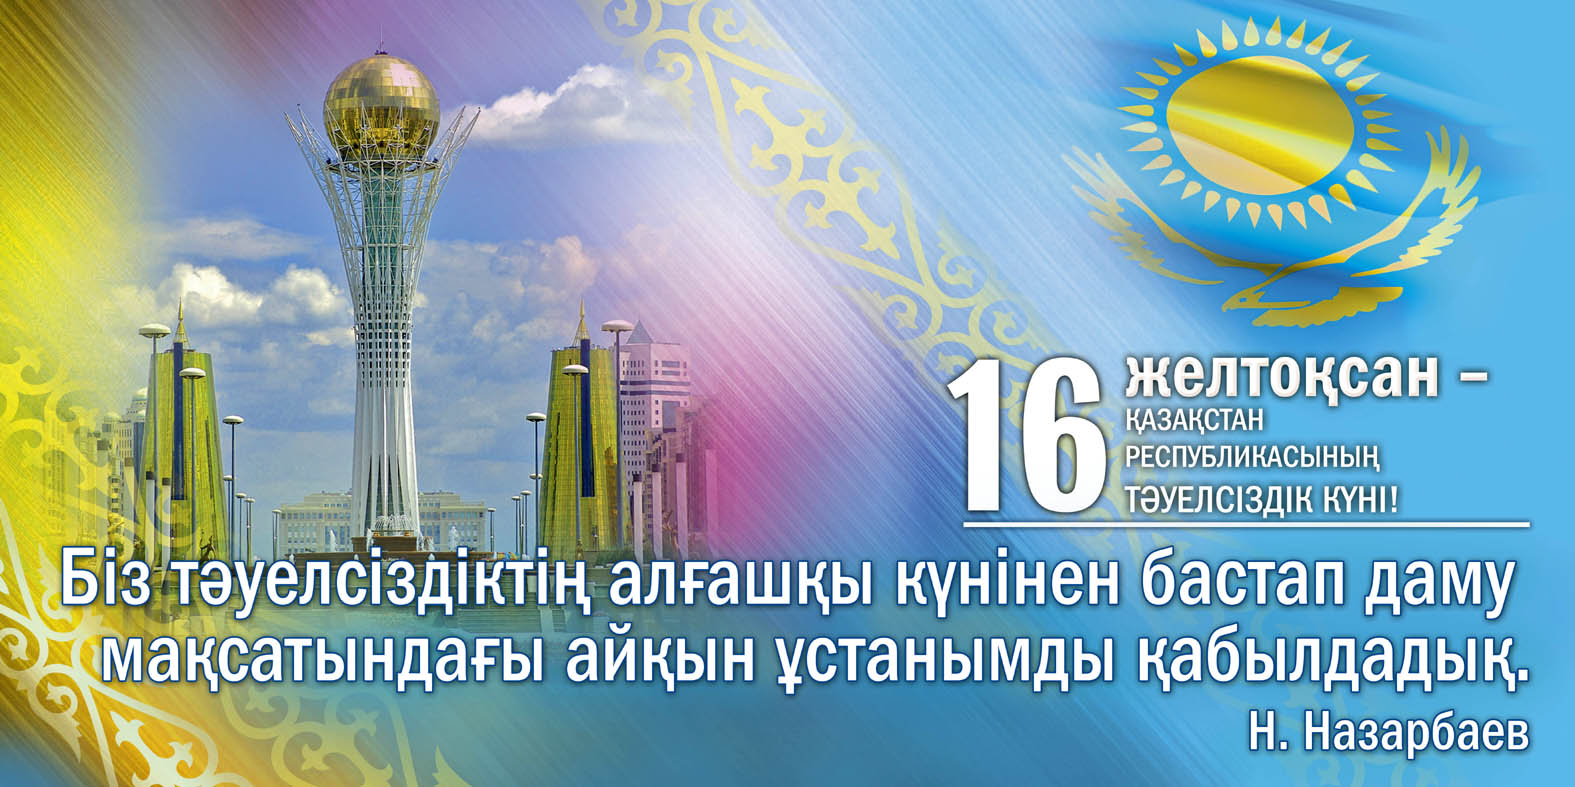 Красивые стихи на День независимости Казахстана